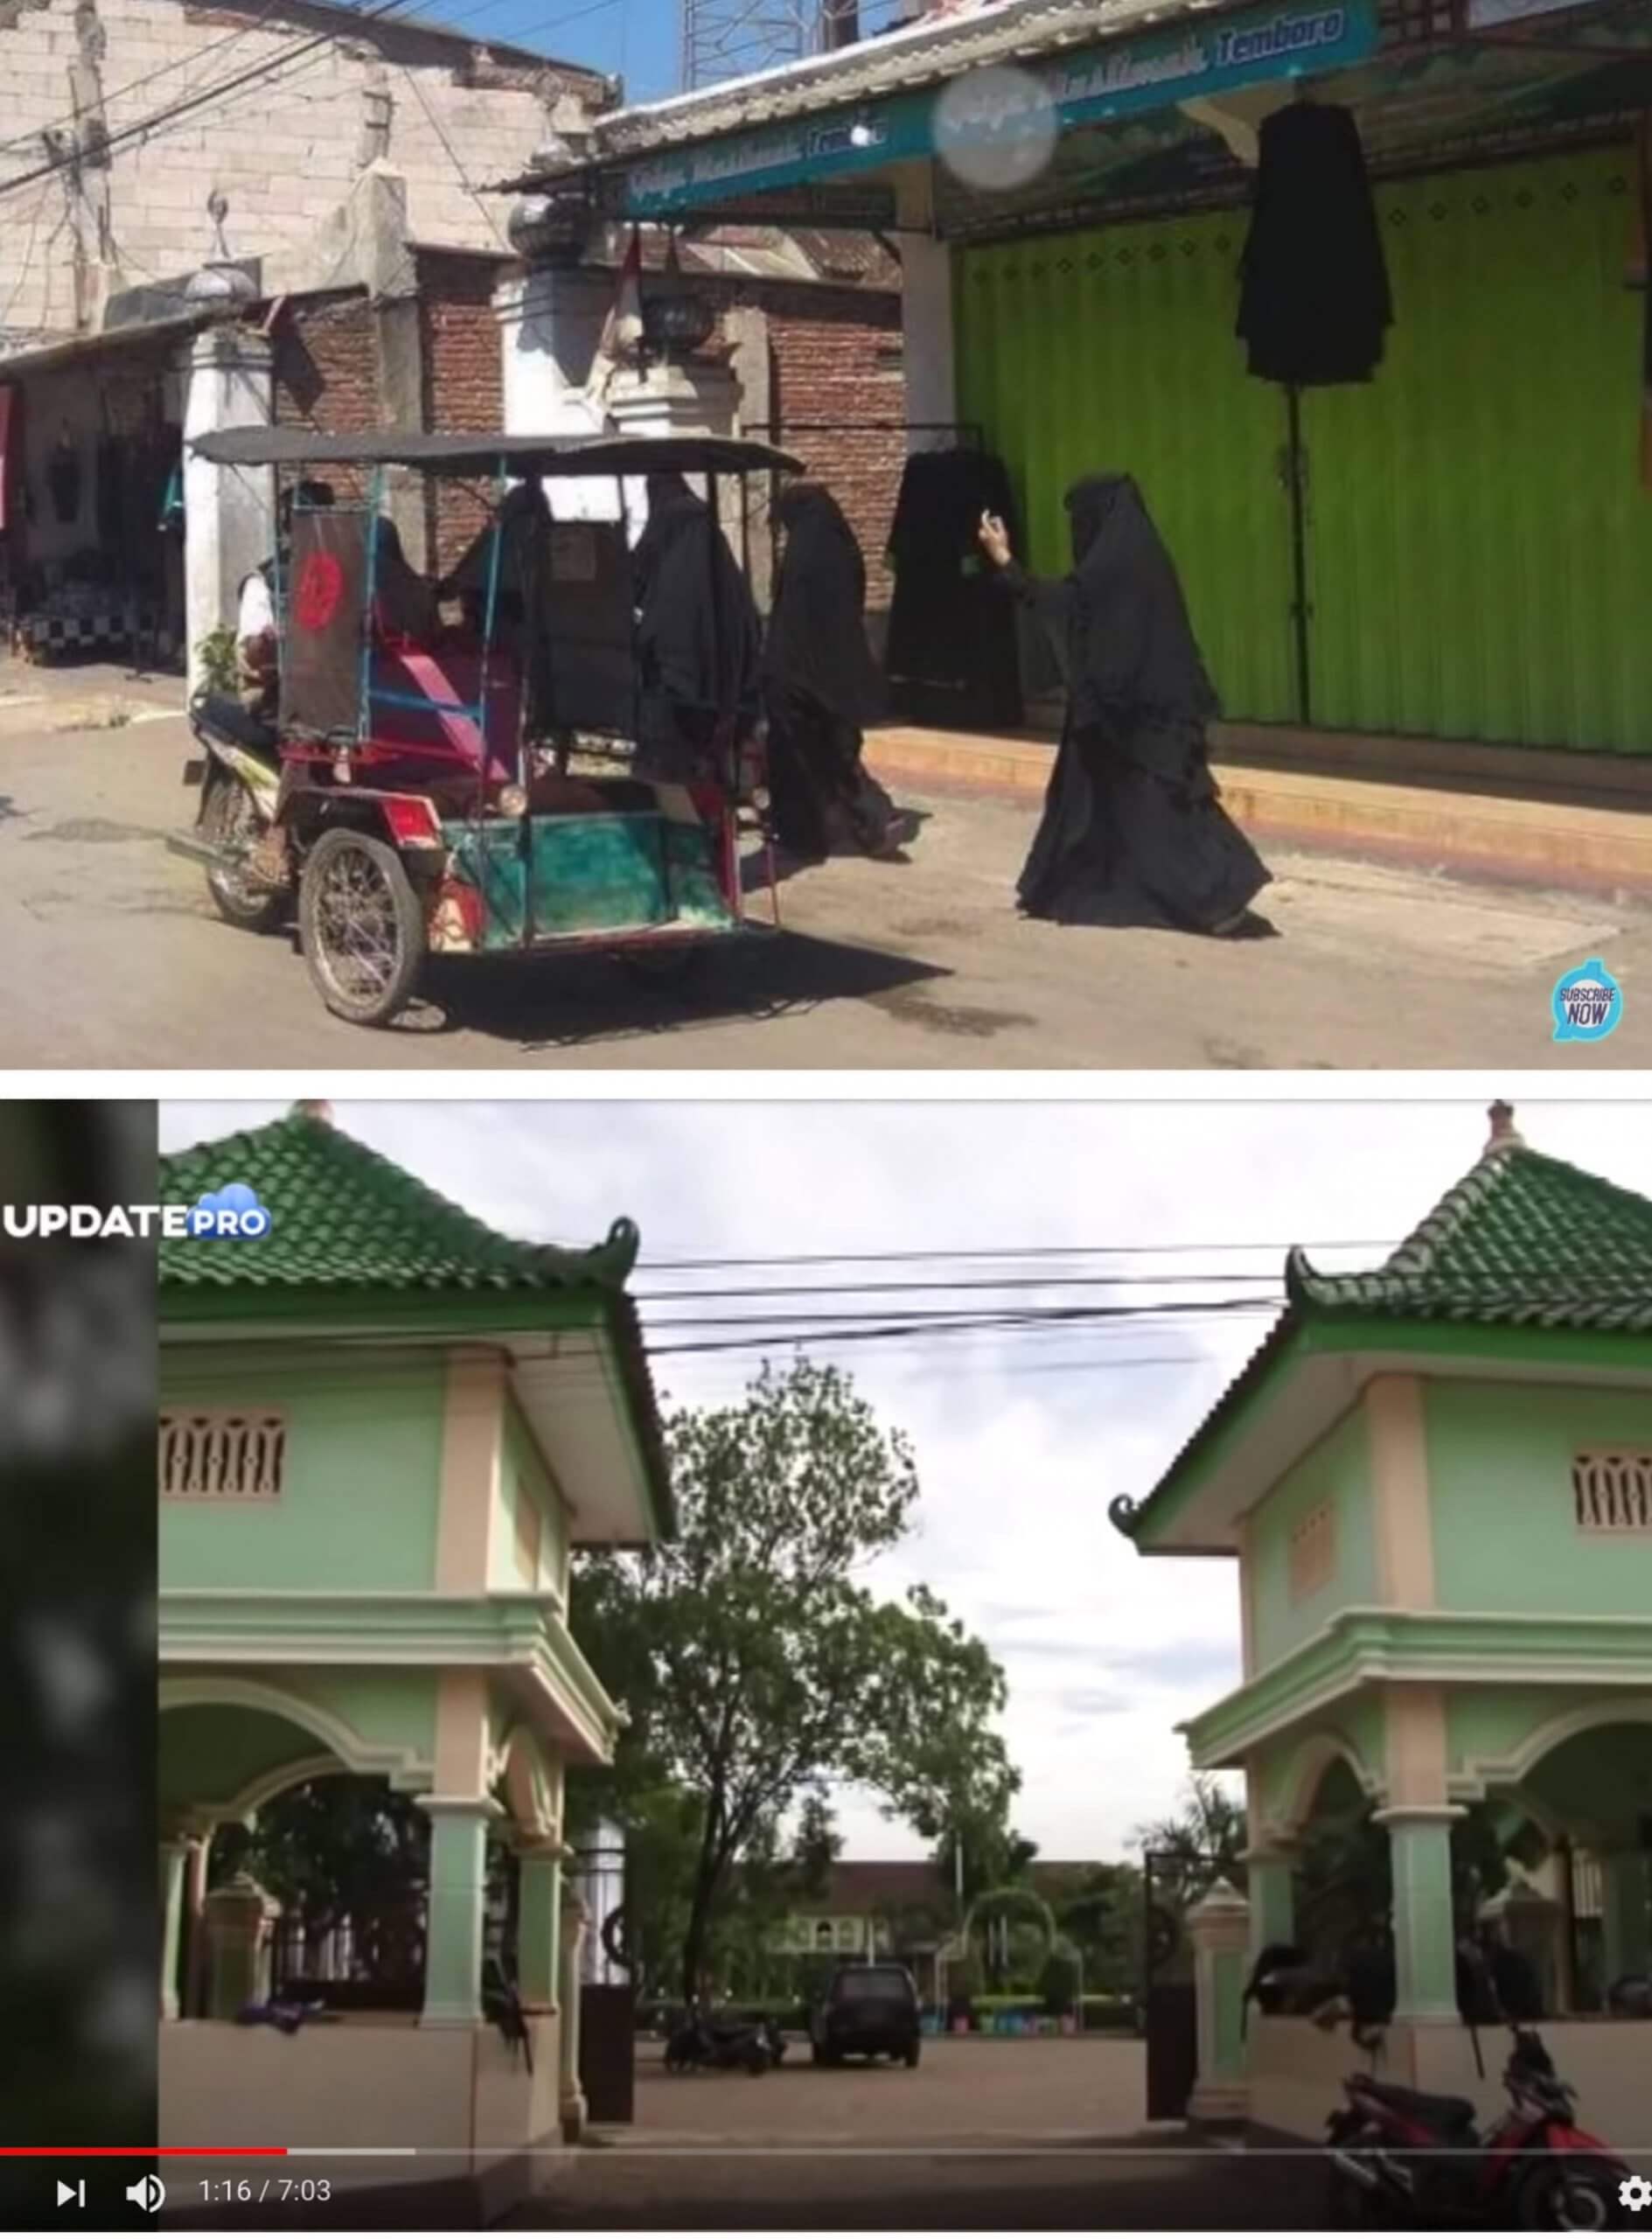 Das Video zeigt einen Dorfteil namens „Madinah“ in Temboro in Indonesien.